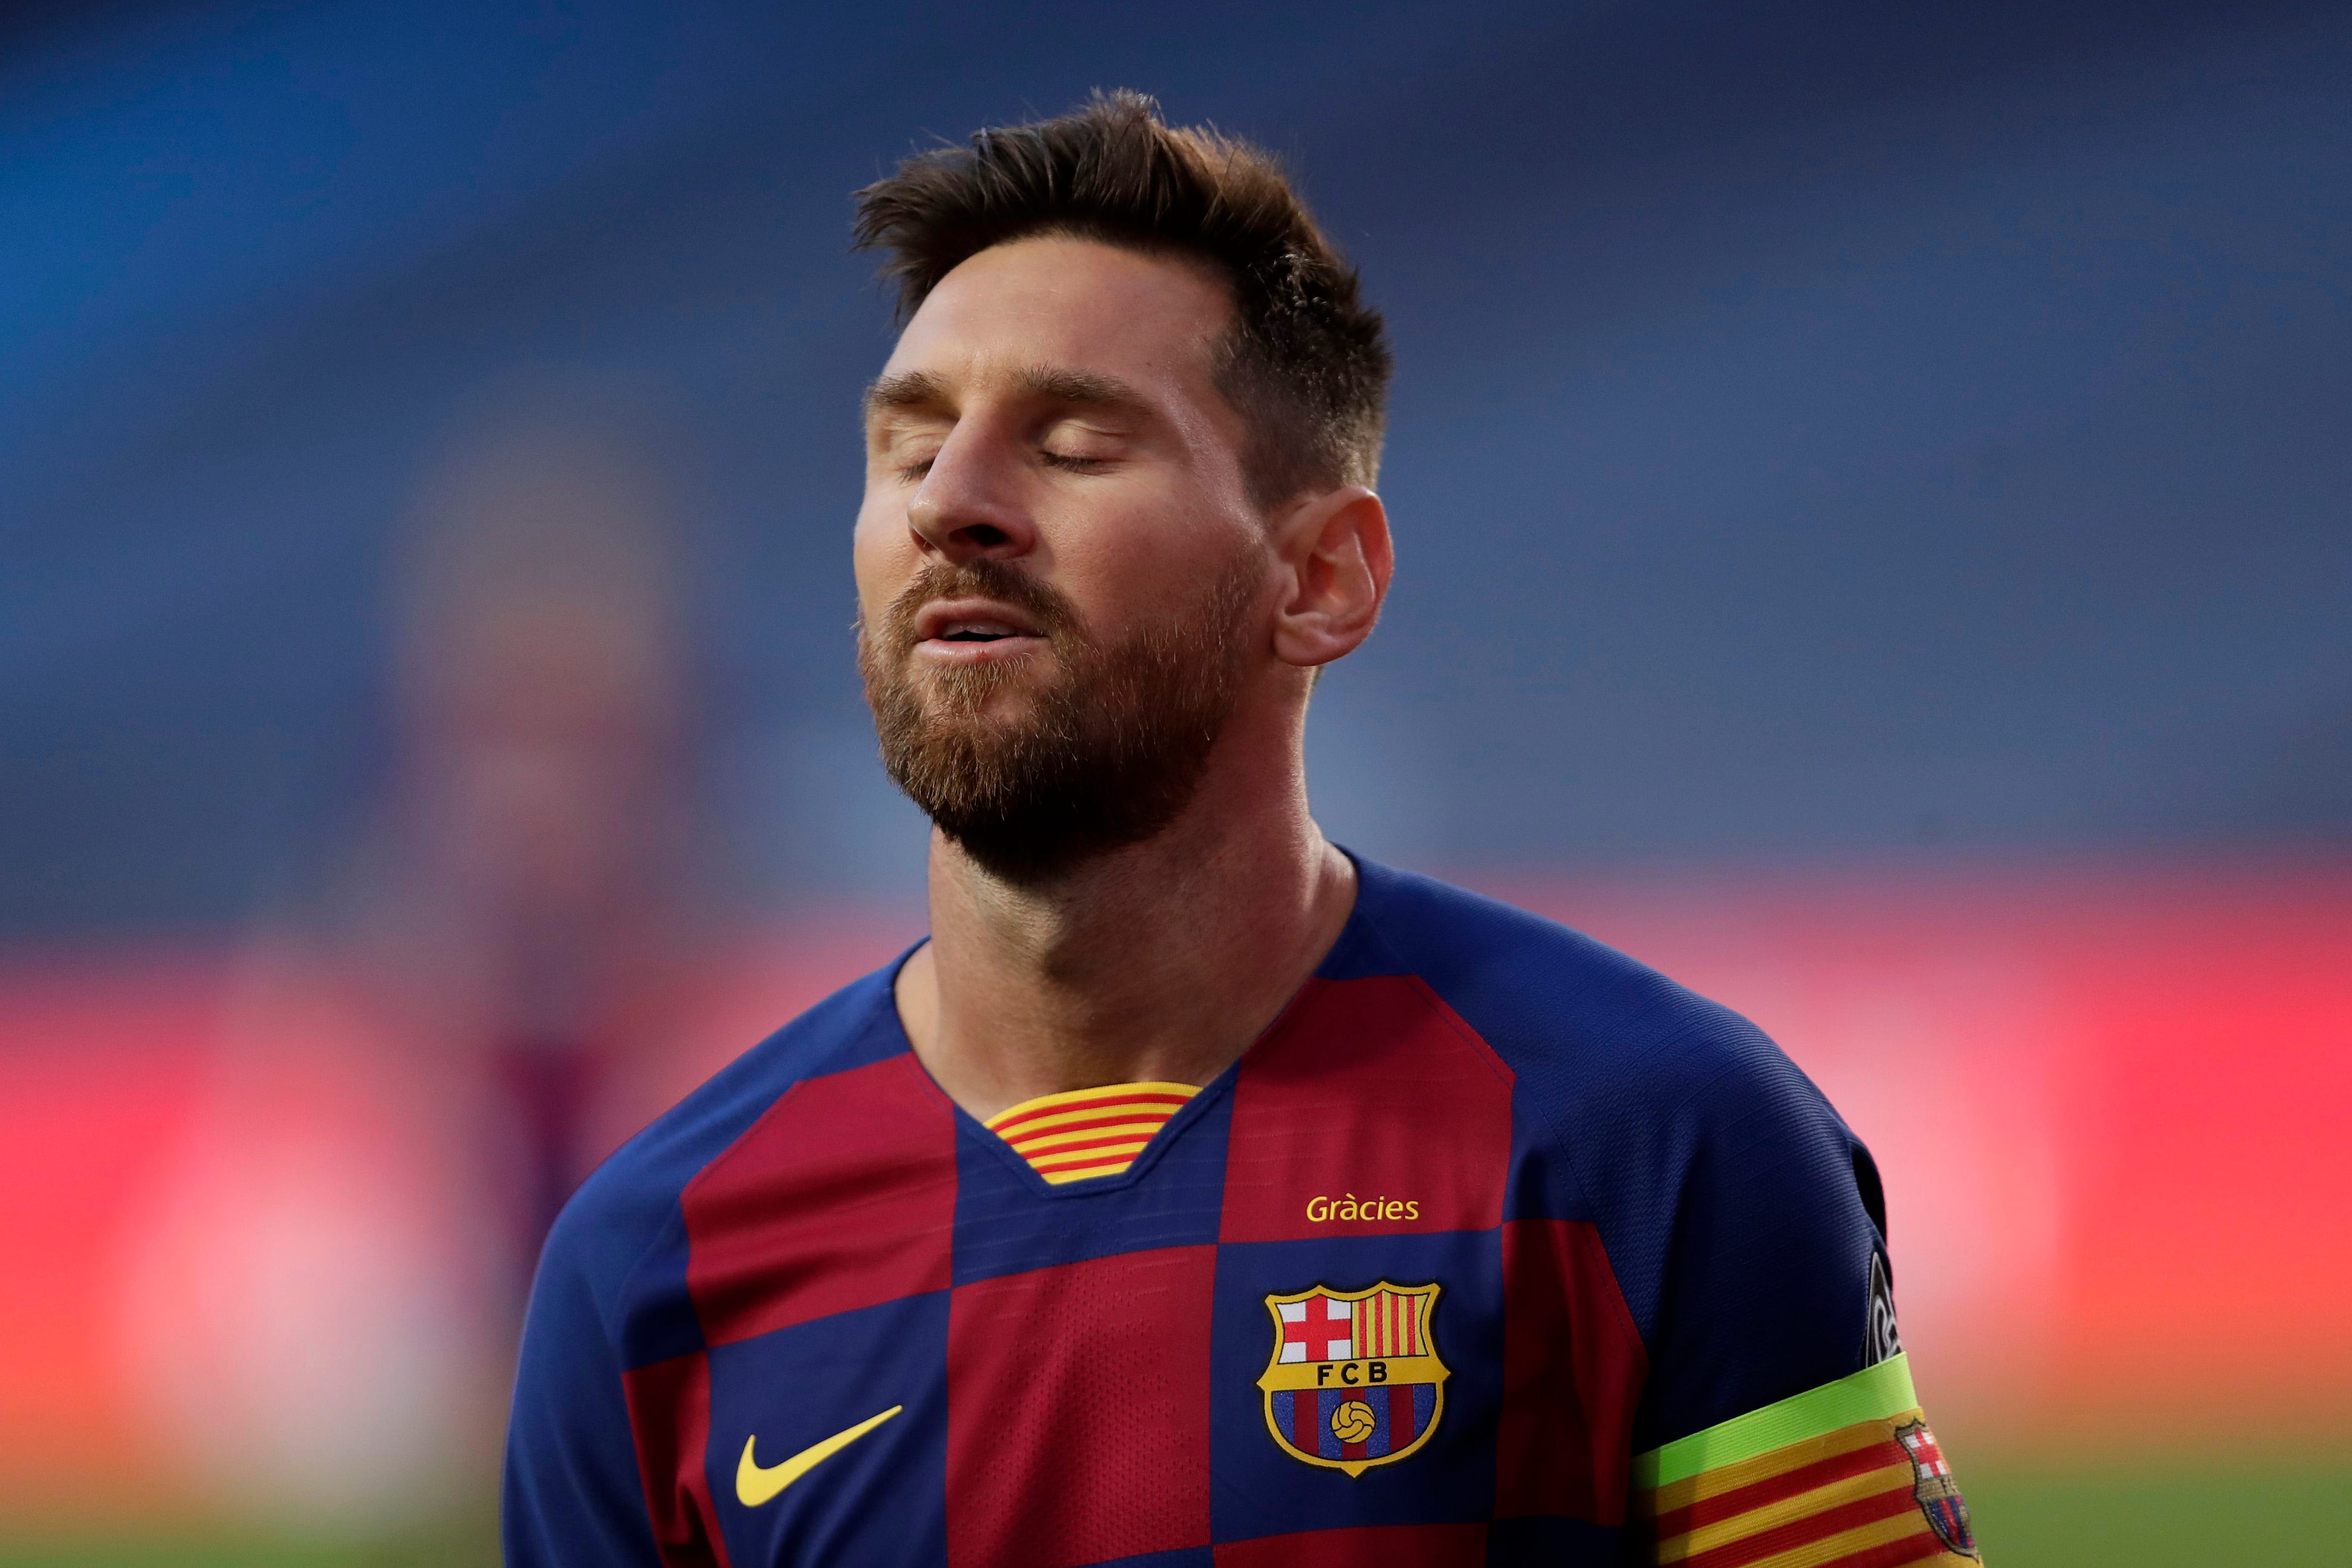 Việc Barcelona thay đổi tên đang trở thành chủ đề hot nhất trên các trang mạng xã hội. Cùng chung tay với Messi và đội bóng của anh, bạn cũng có thể tham gia và gửi gắm niềm tin của mình thông qua bức hình ảnh đầy sáng tạo và đầy ý nghĩa.